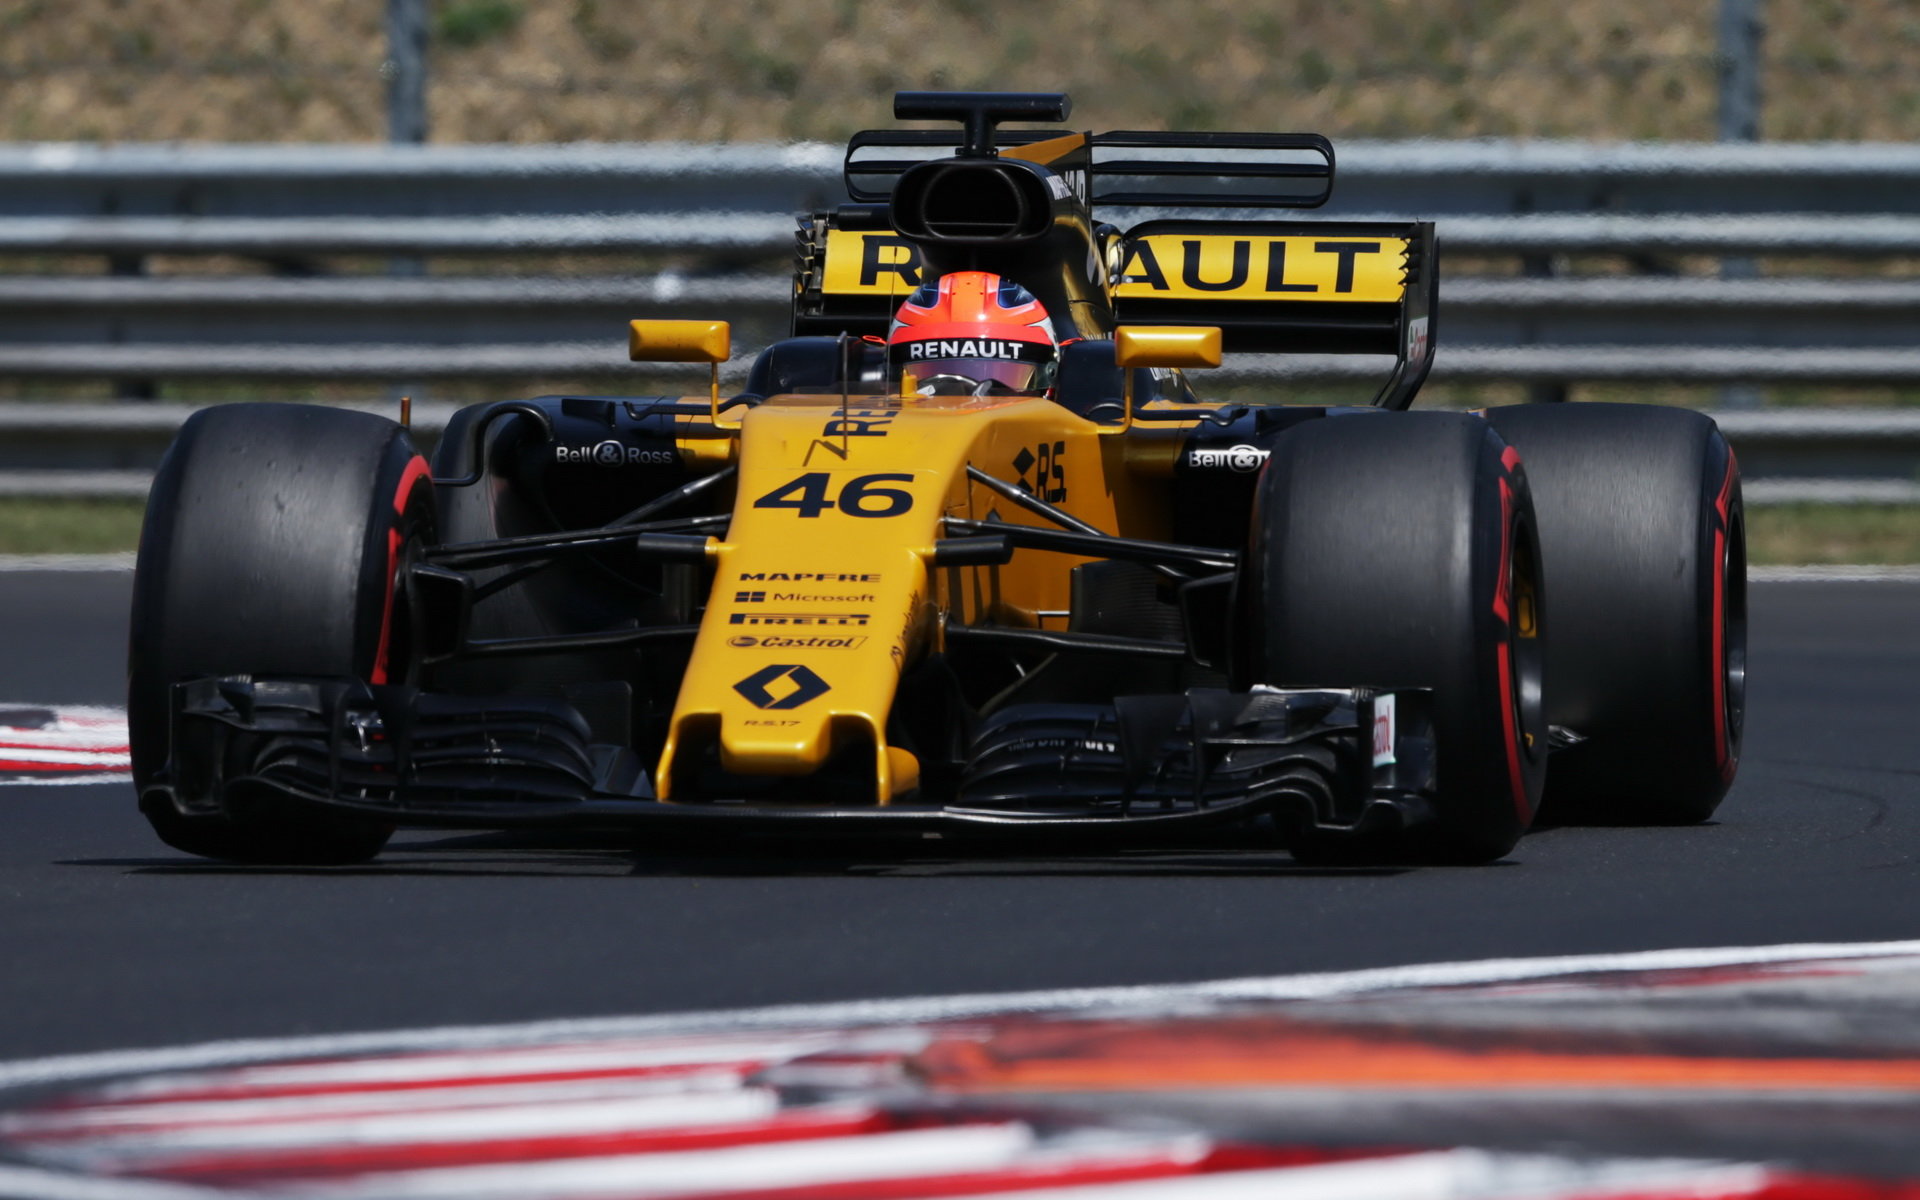 Robert Kubica testuje druhý den vůz Renault RS17 v Maďarsku